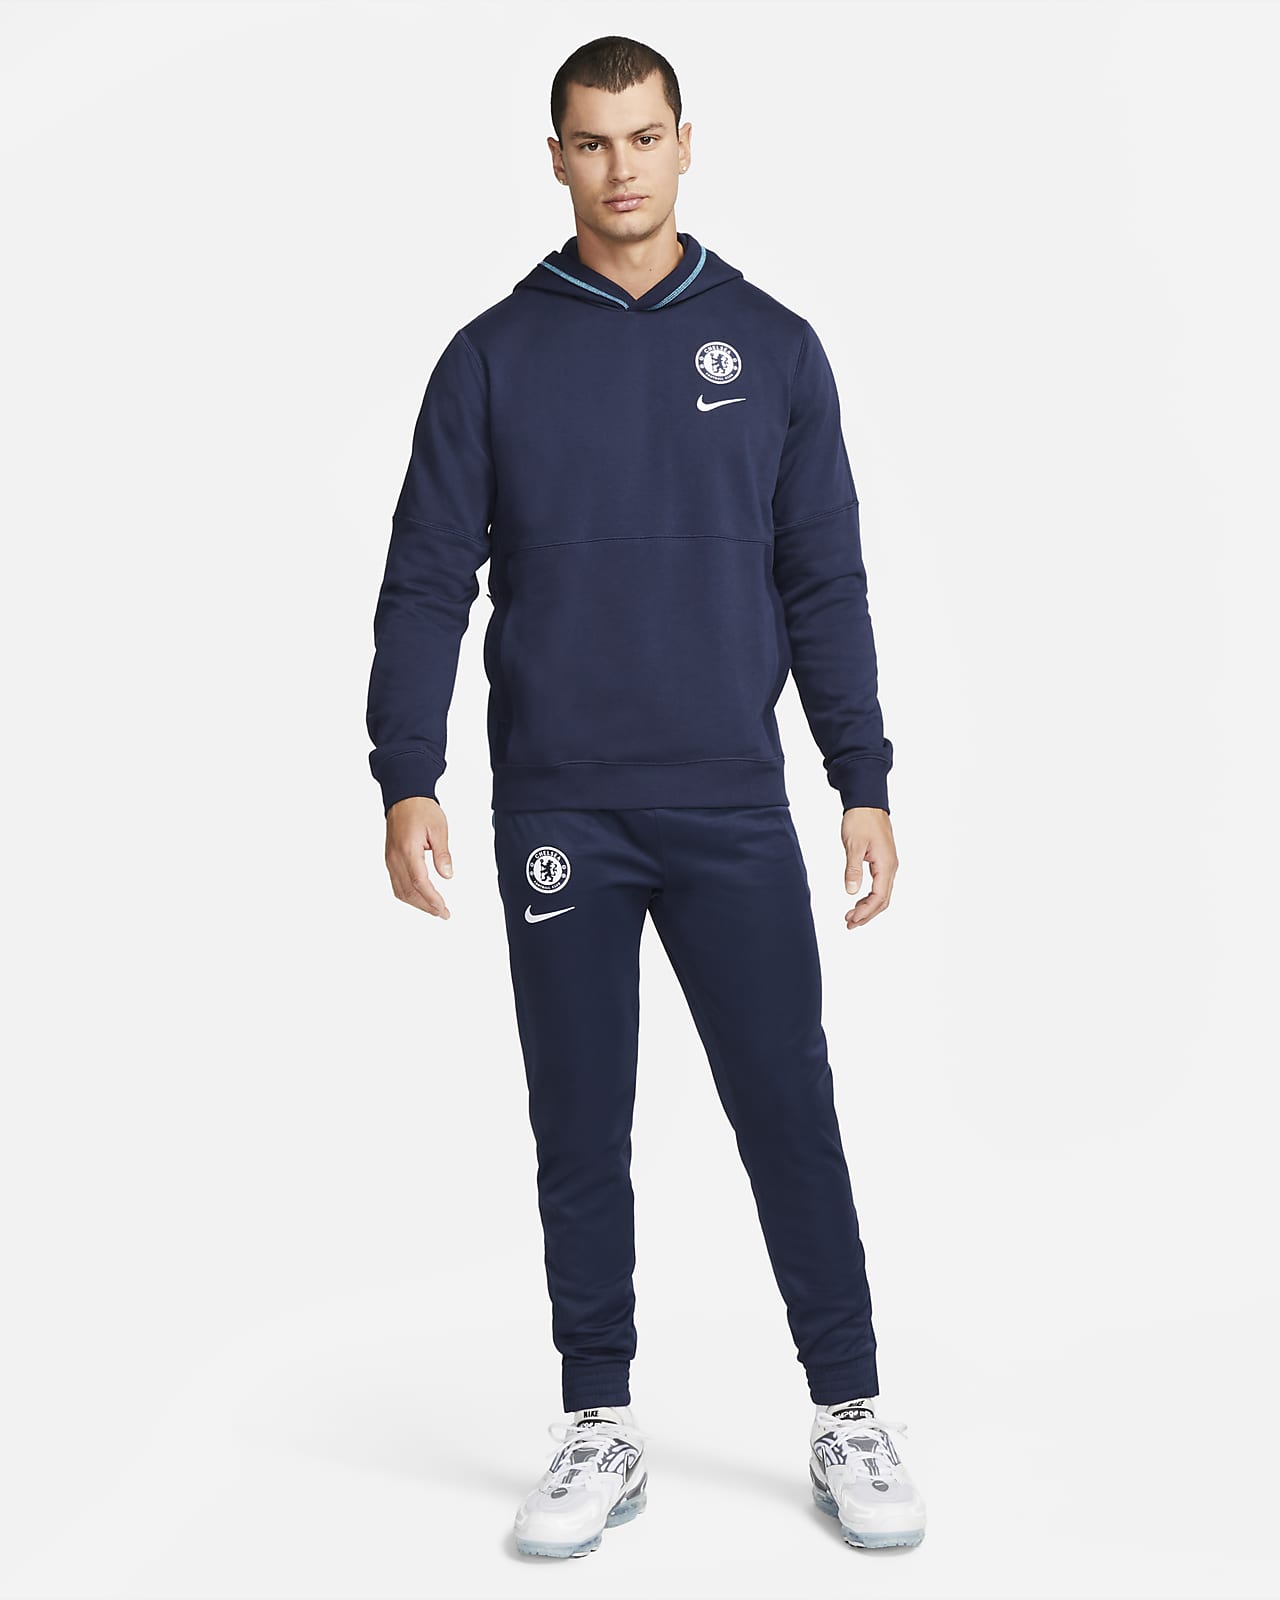 FC Travel Sudadera capucha de tejido Fleece de fútbol - Hombre. Nike ES